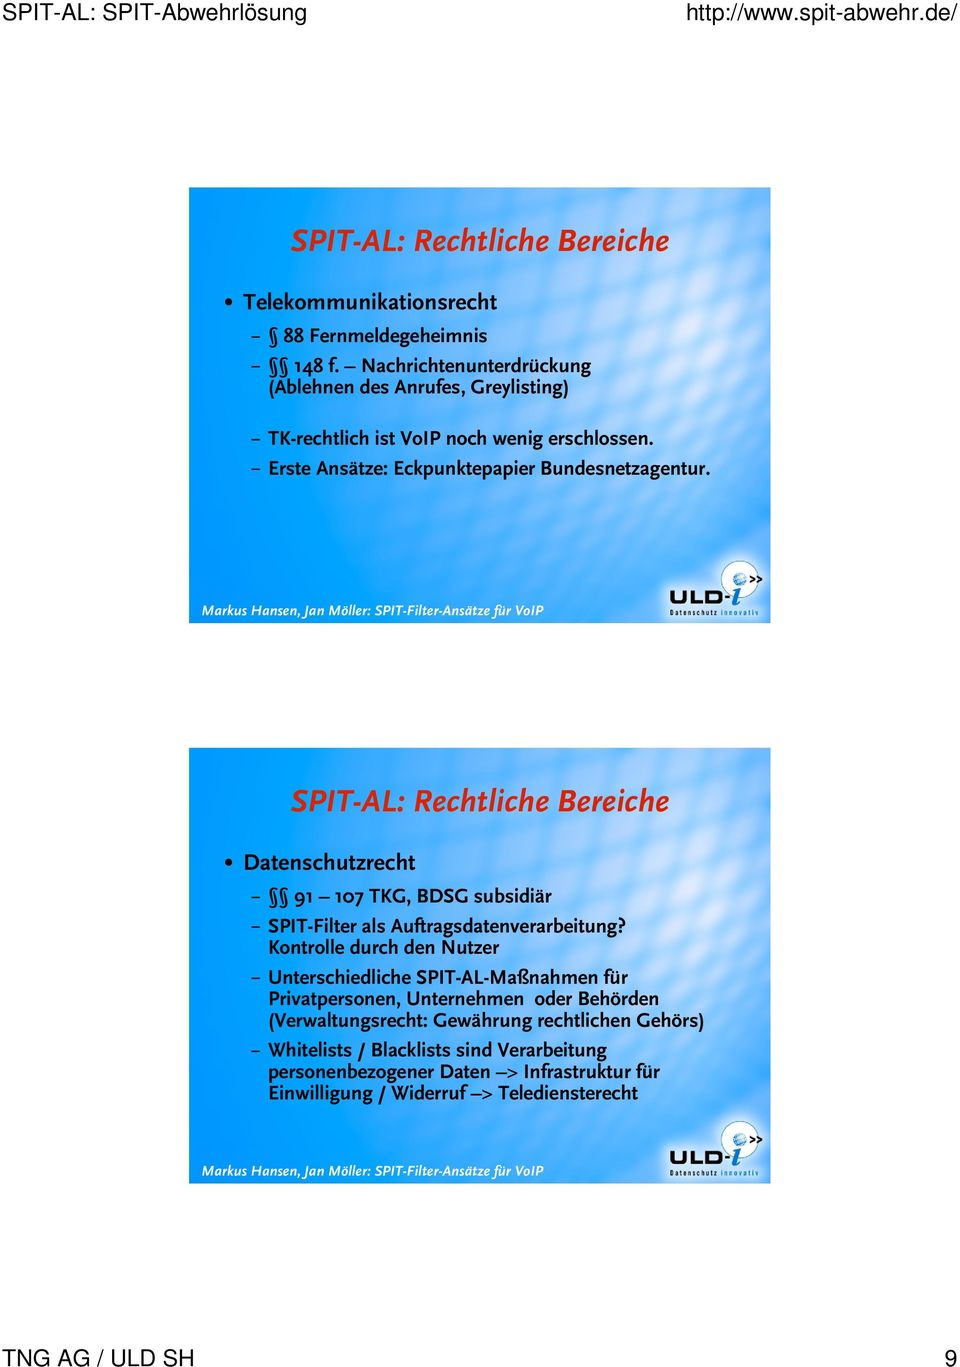 SPIT-AL: Rechtliche Bereiche Datenschutzrecht 91 107 TKG, BDSG subsidiär SPIT-Filter als Auftragsdatenverarbeitung?